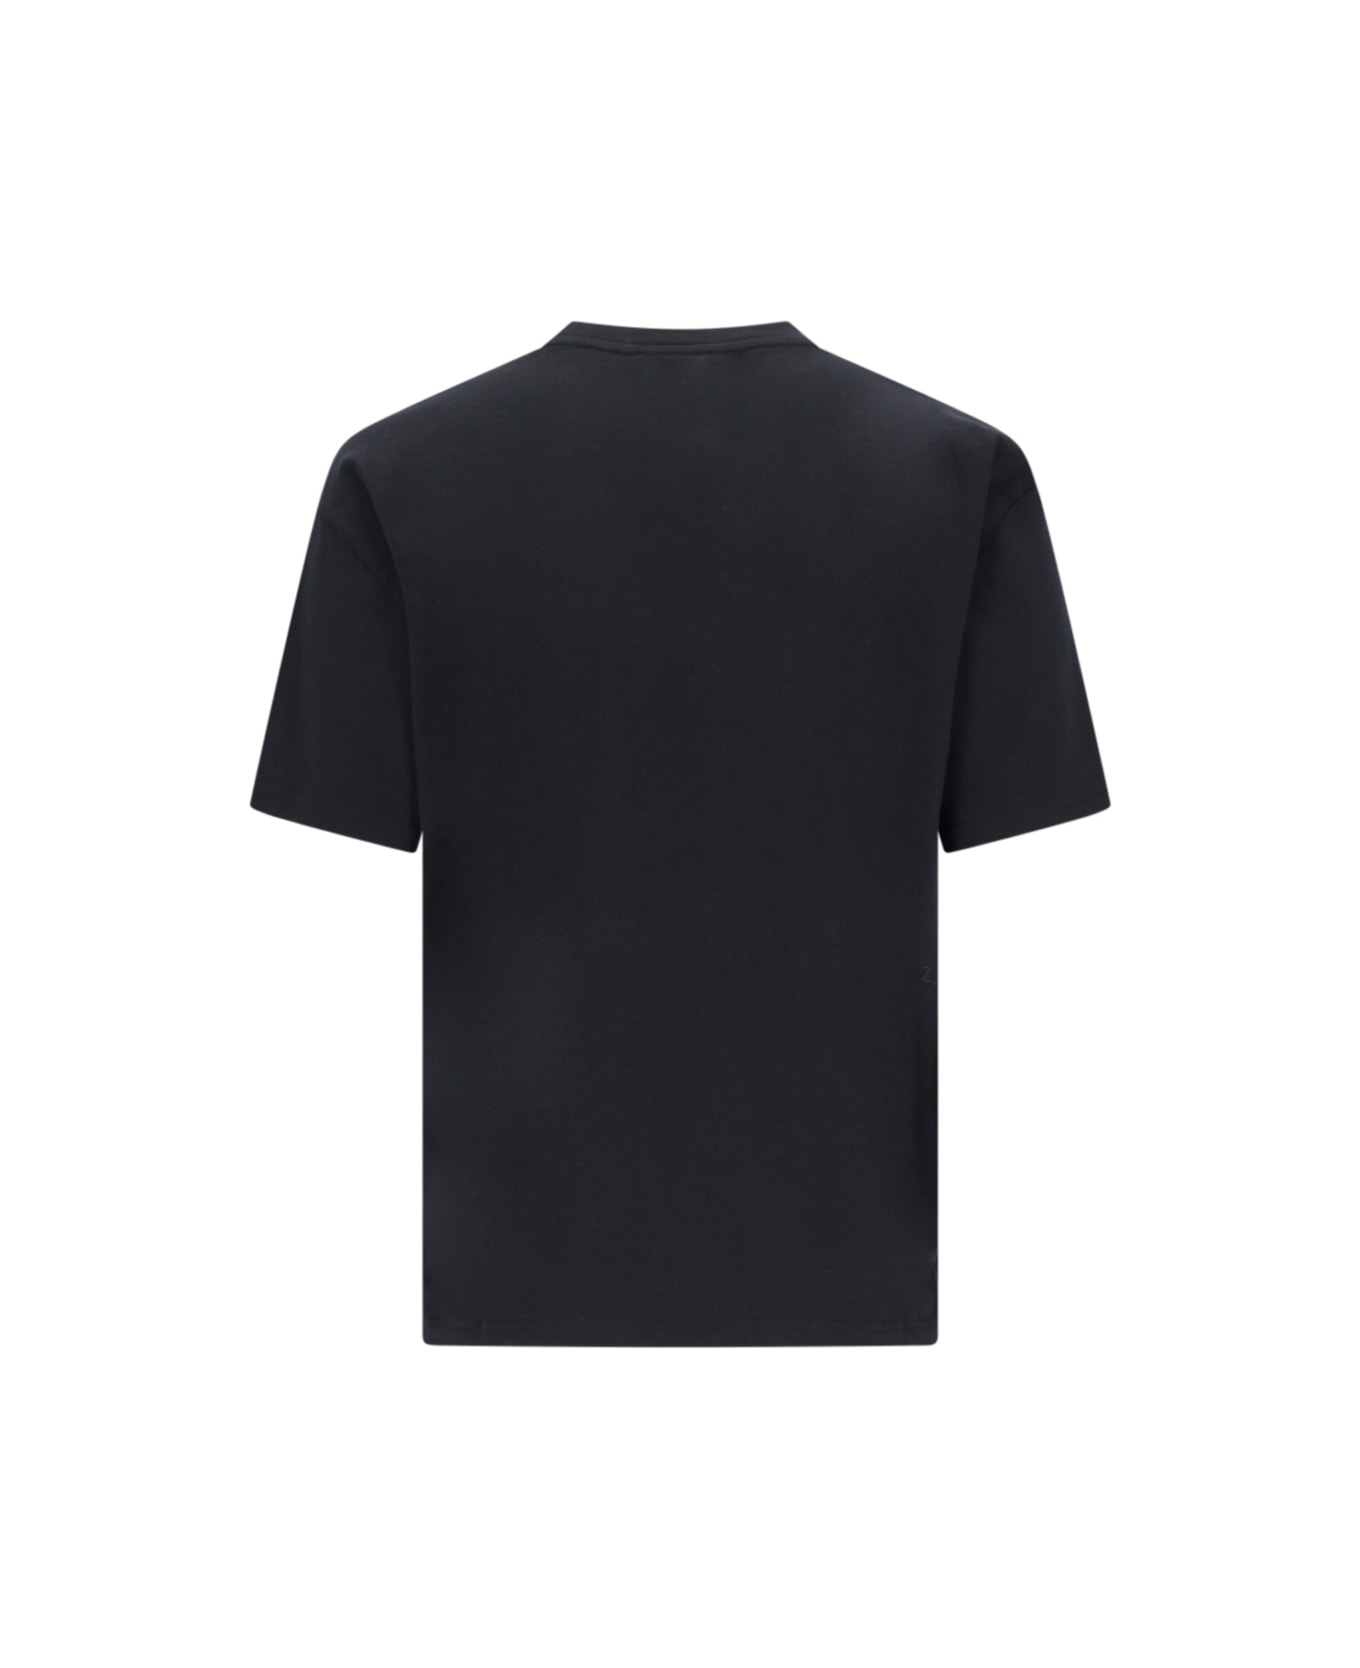 J.W. Anderson Printed T-shirt - Black   シャツ